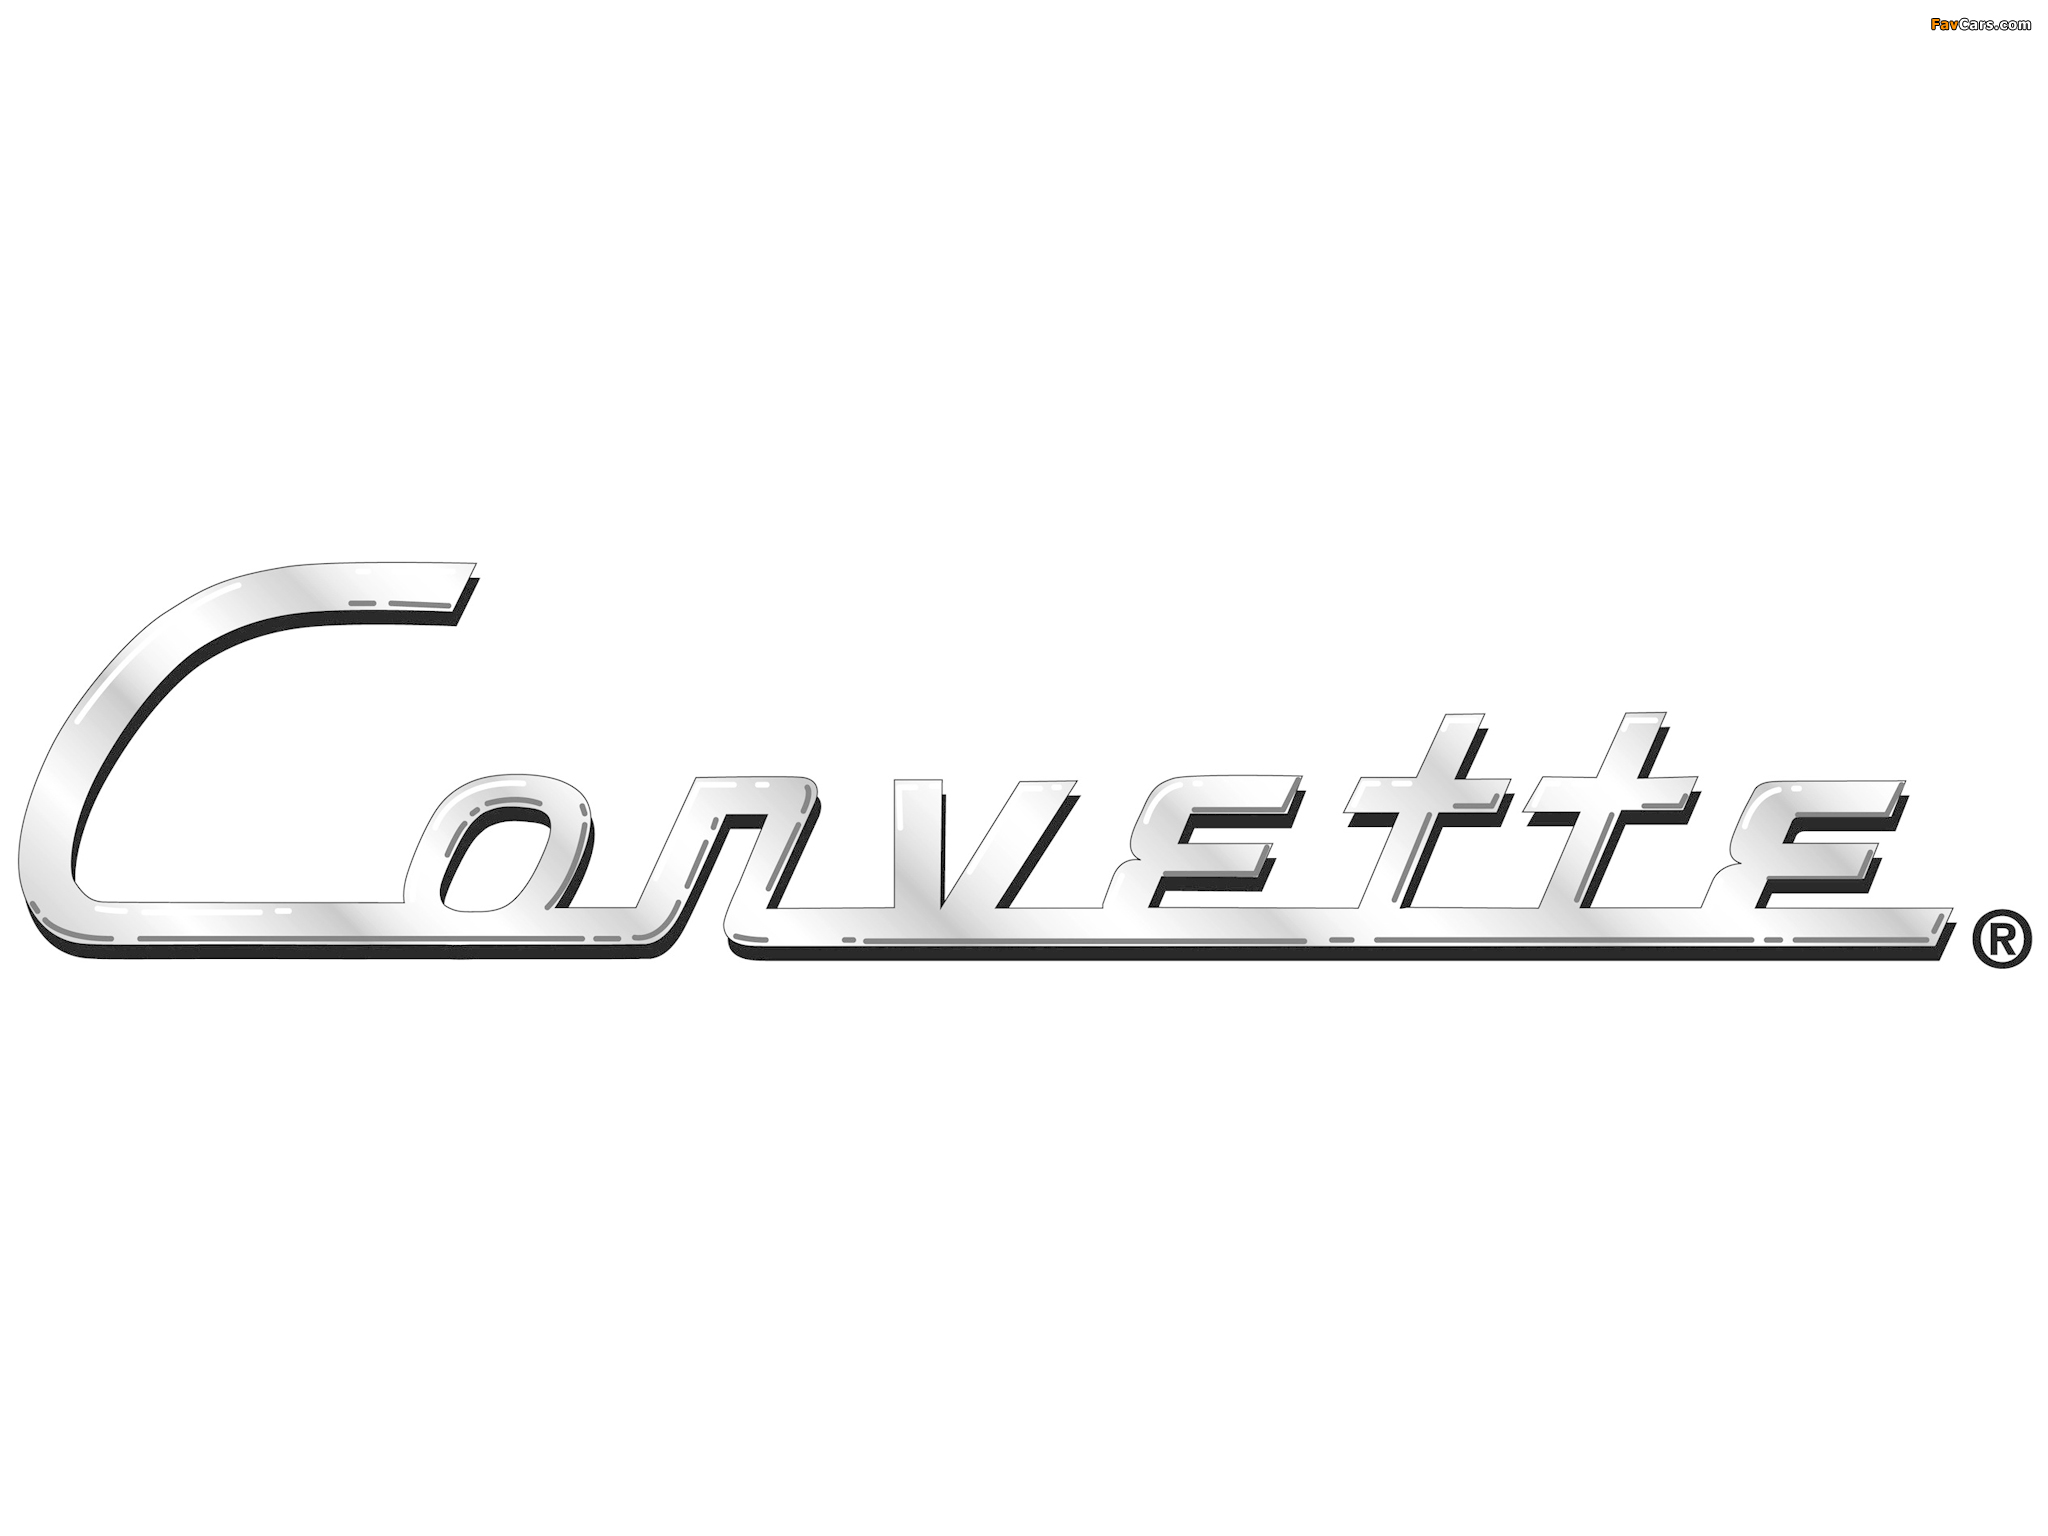 Corvette images (2048 x 1536)